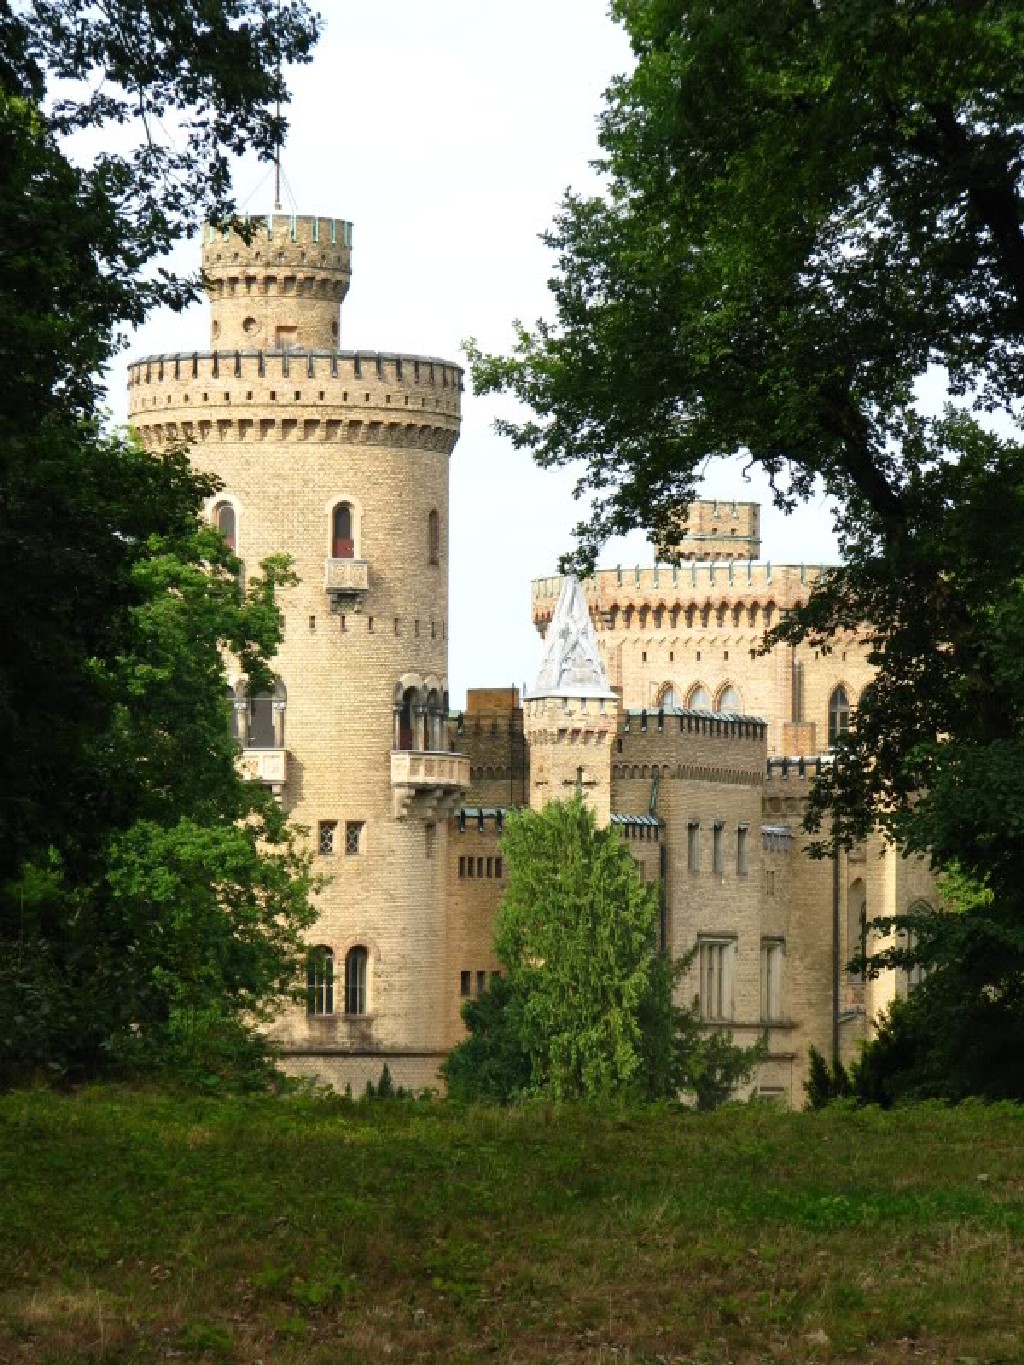  вид дворца со стороны парка